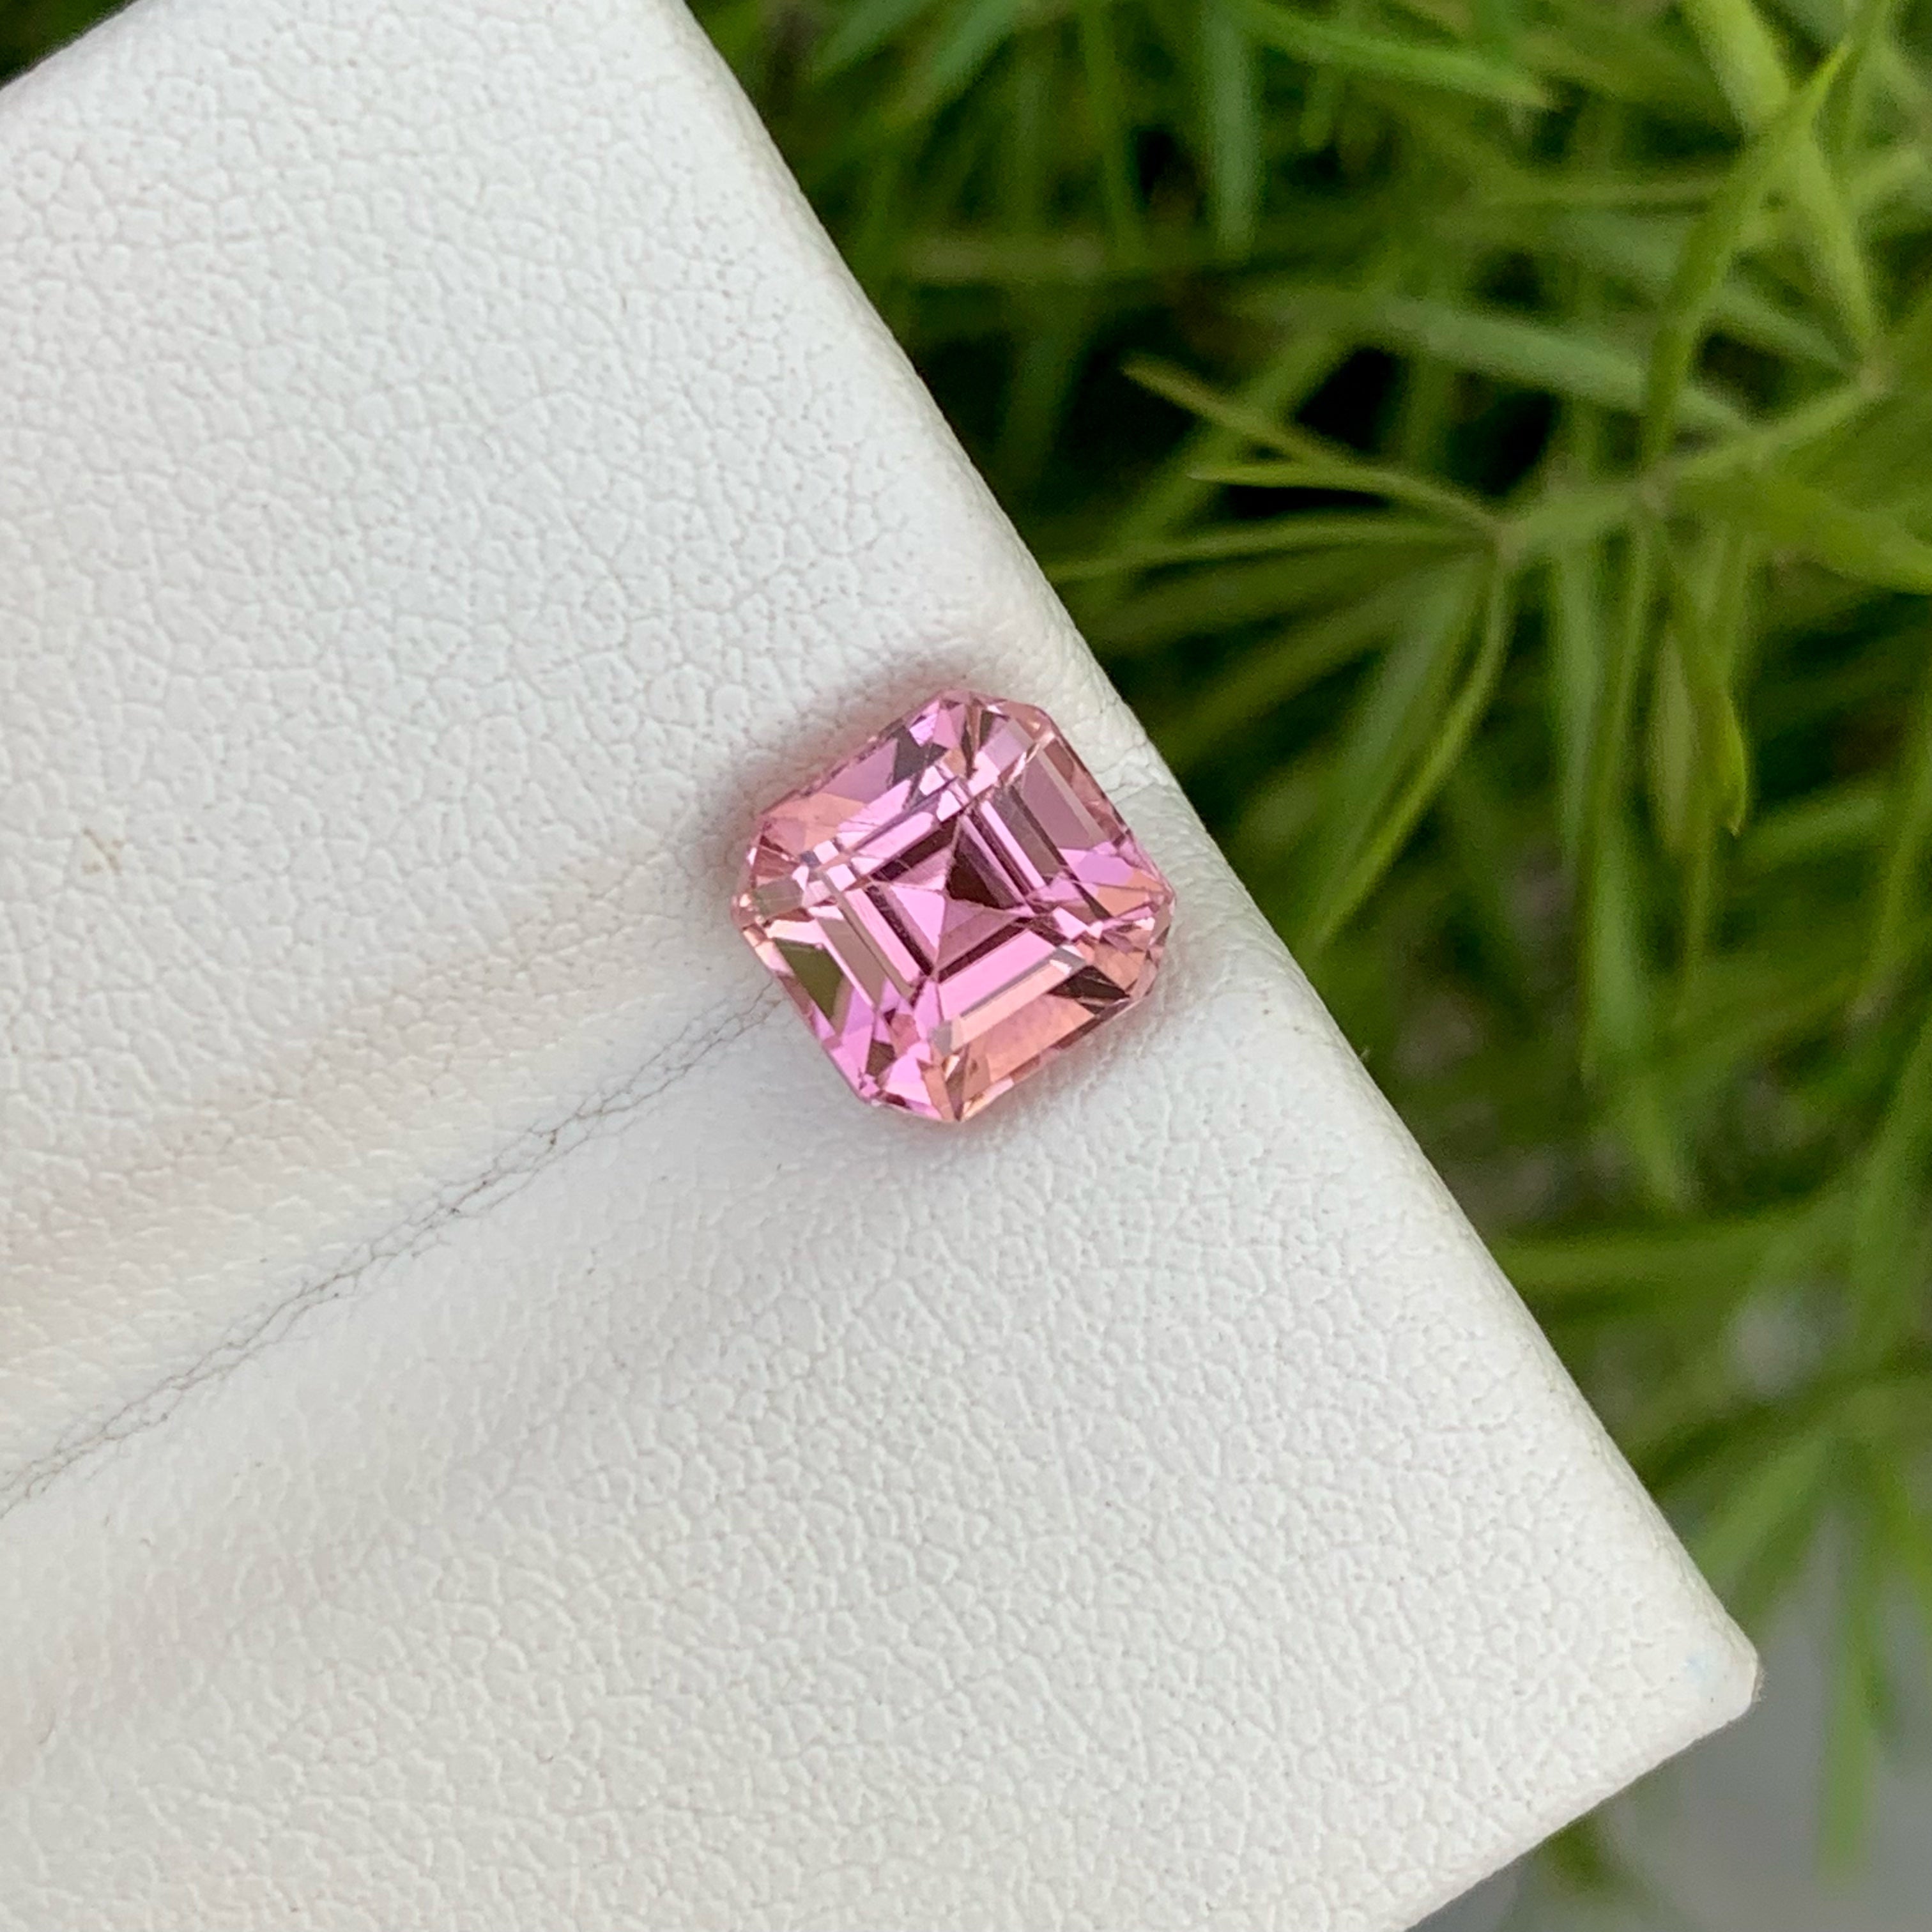 Fancy Natural Sweet Pink Tourmaline Gemstone